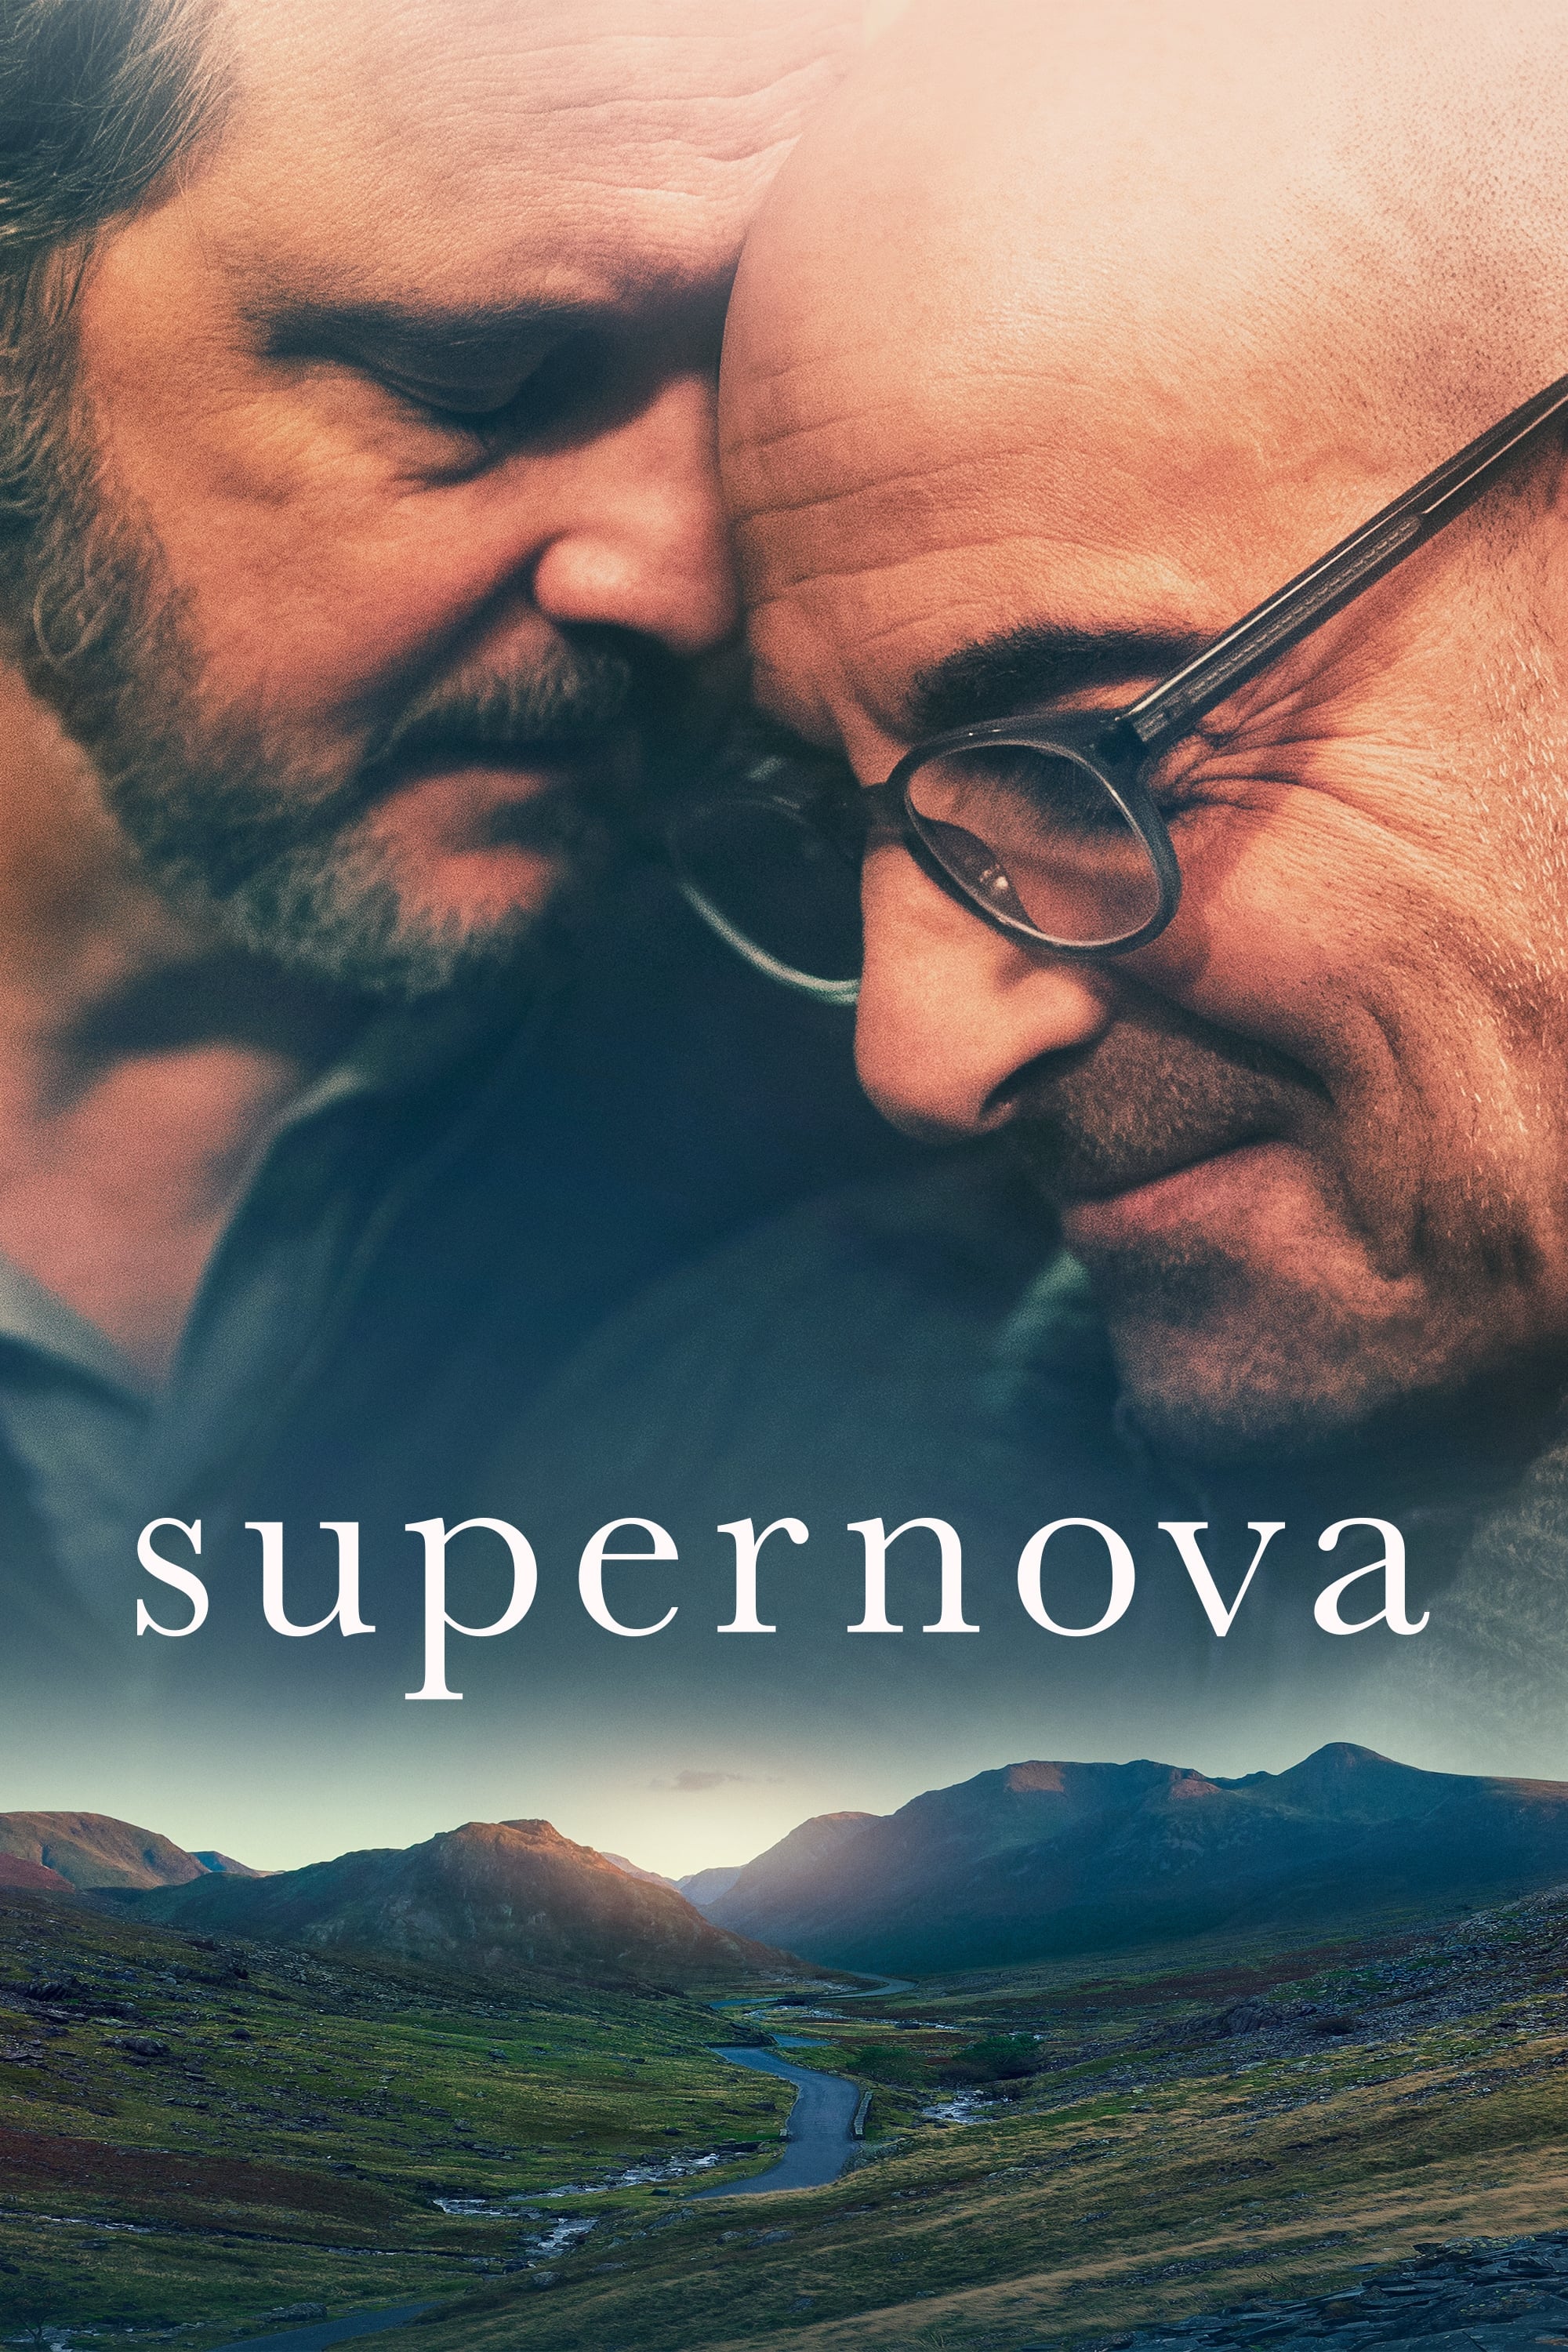 Supernova - Supernova (2020)